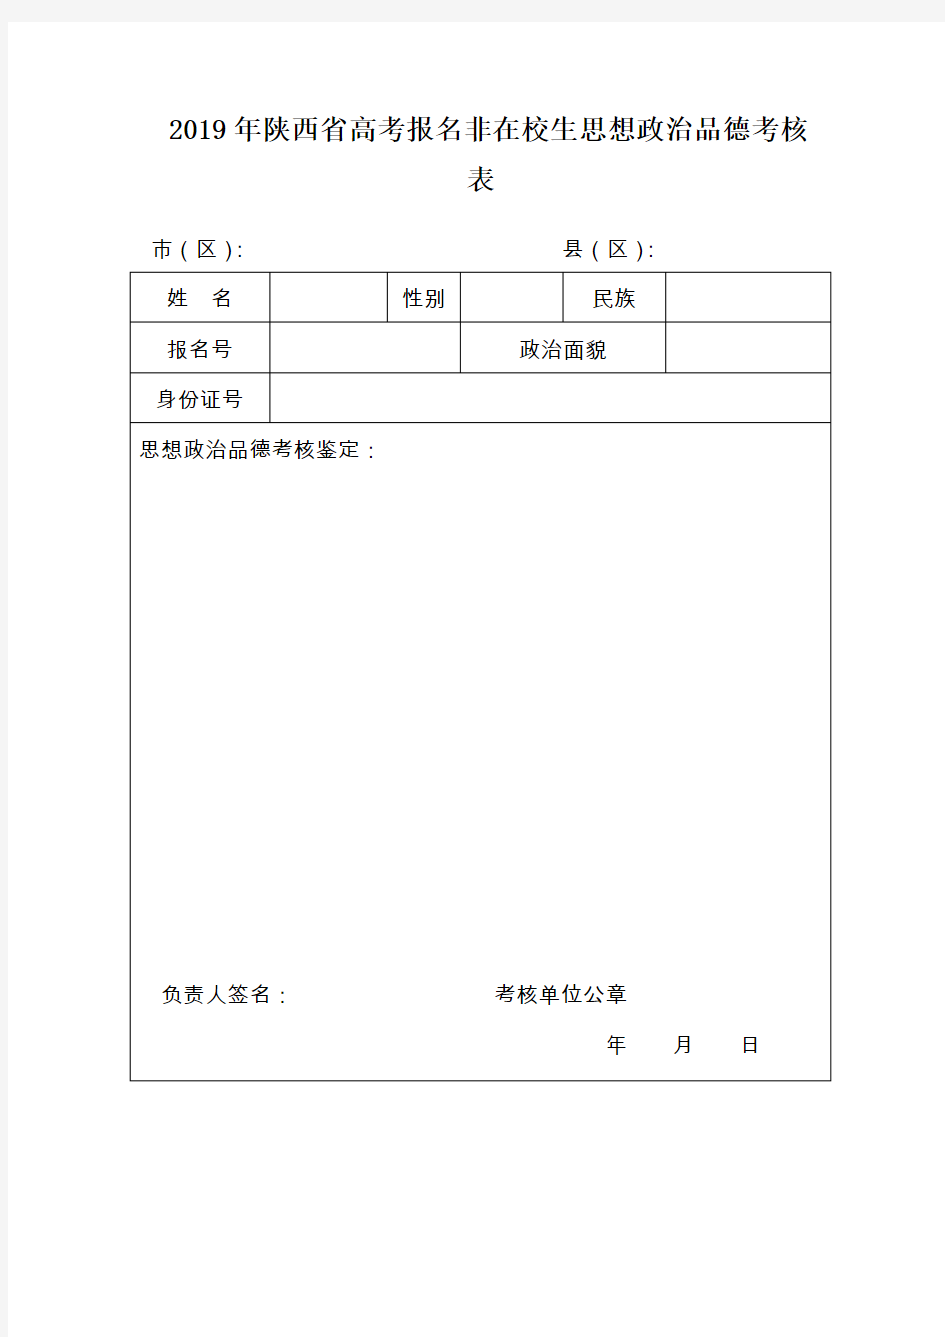 2019年陕西省高考报名非在校生思想政治品德考核表